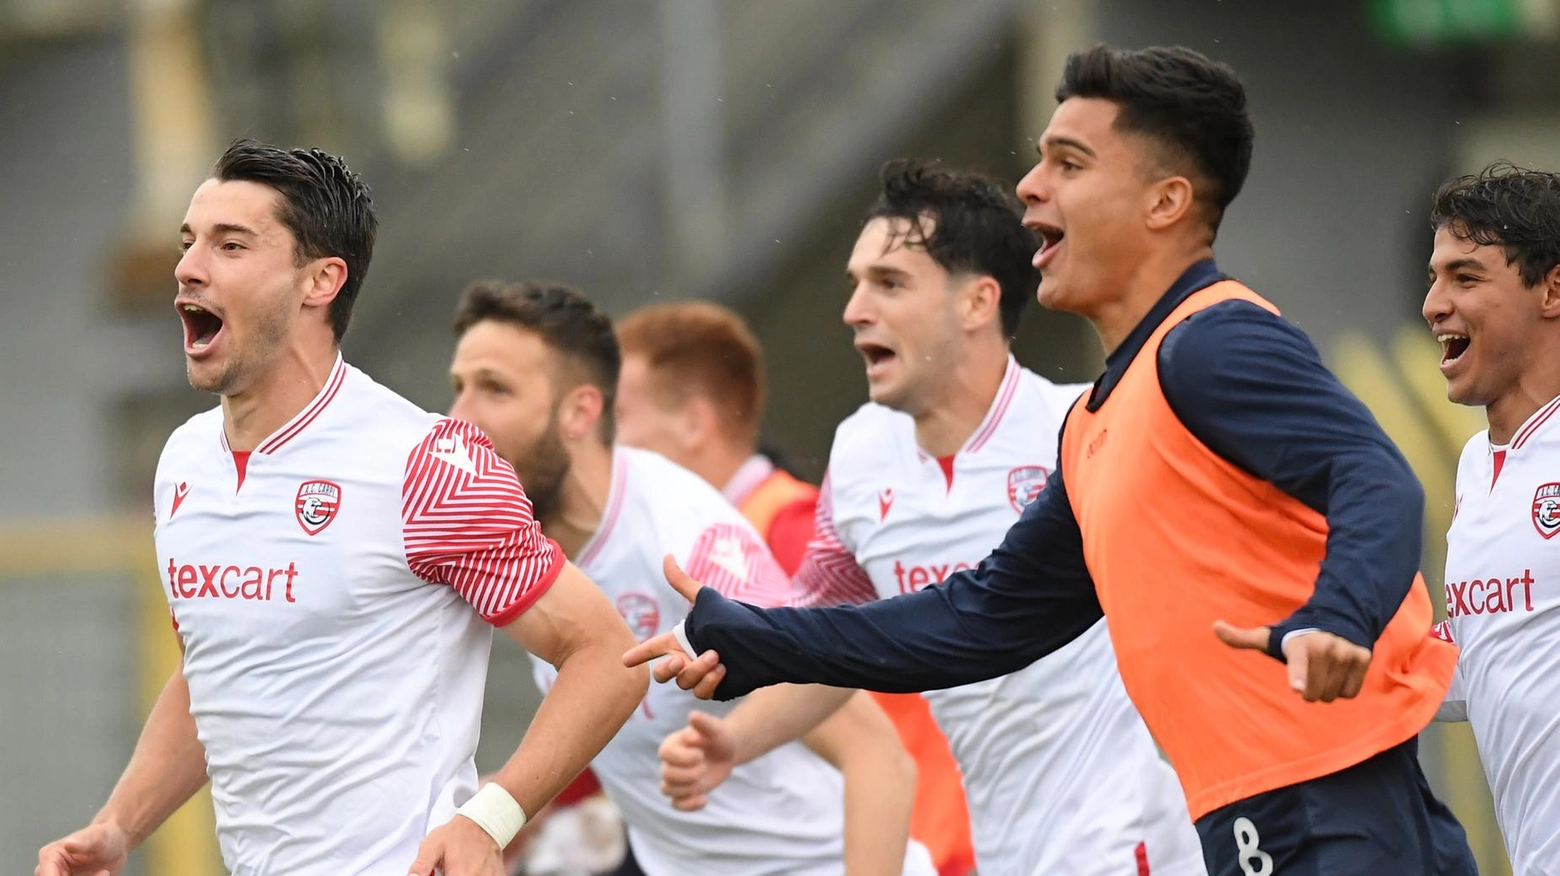 Il Forlì perde di fronte al giudice sportivo della Serie D contro il Carpi, che conferma la vittoria 2-1. Il Forlì annuncia reclamo in Corte d’Appello, ritardando la possibile promozione in Lega Pro.